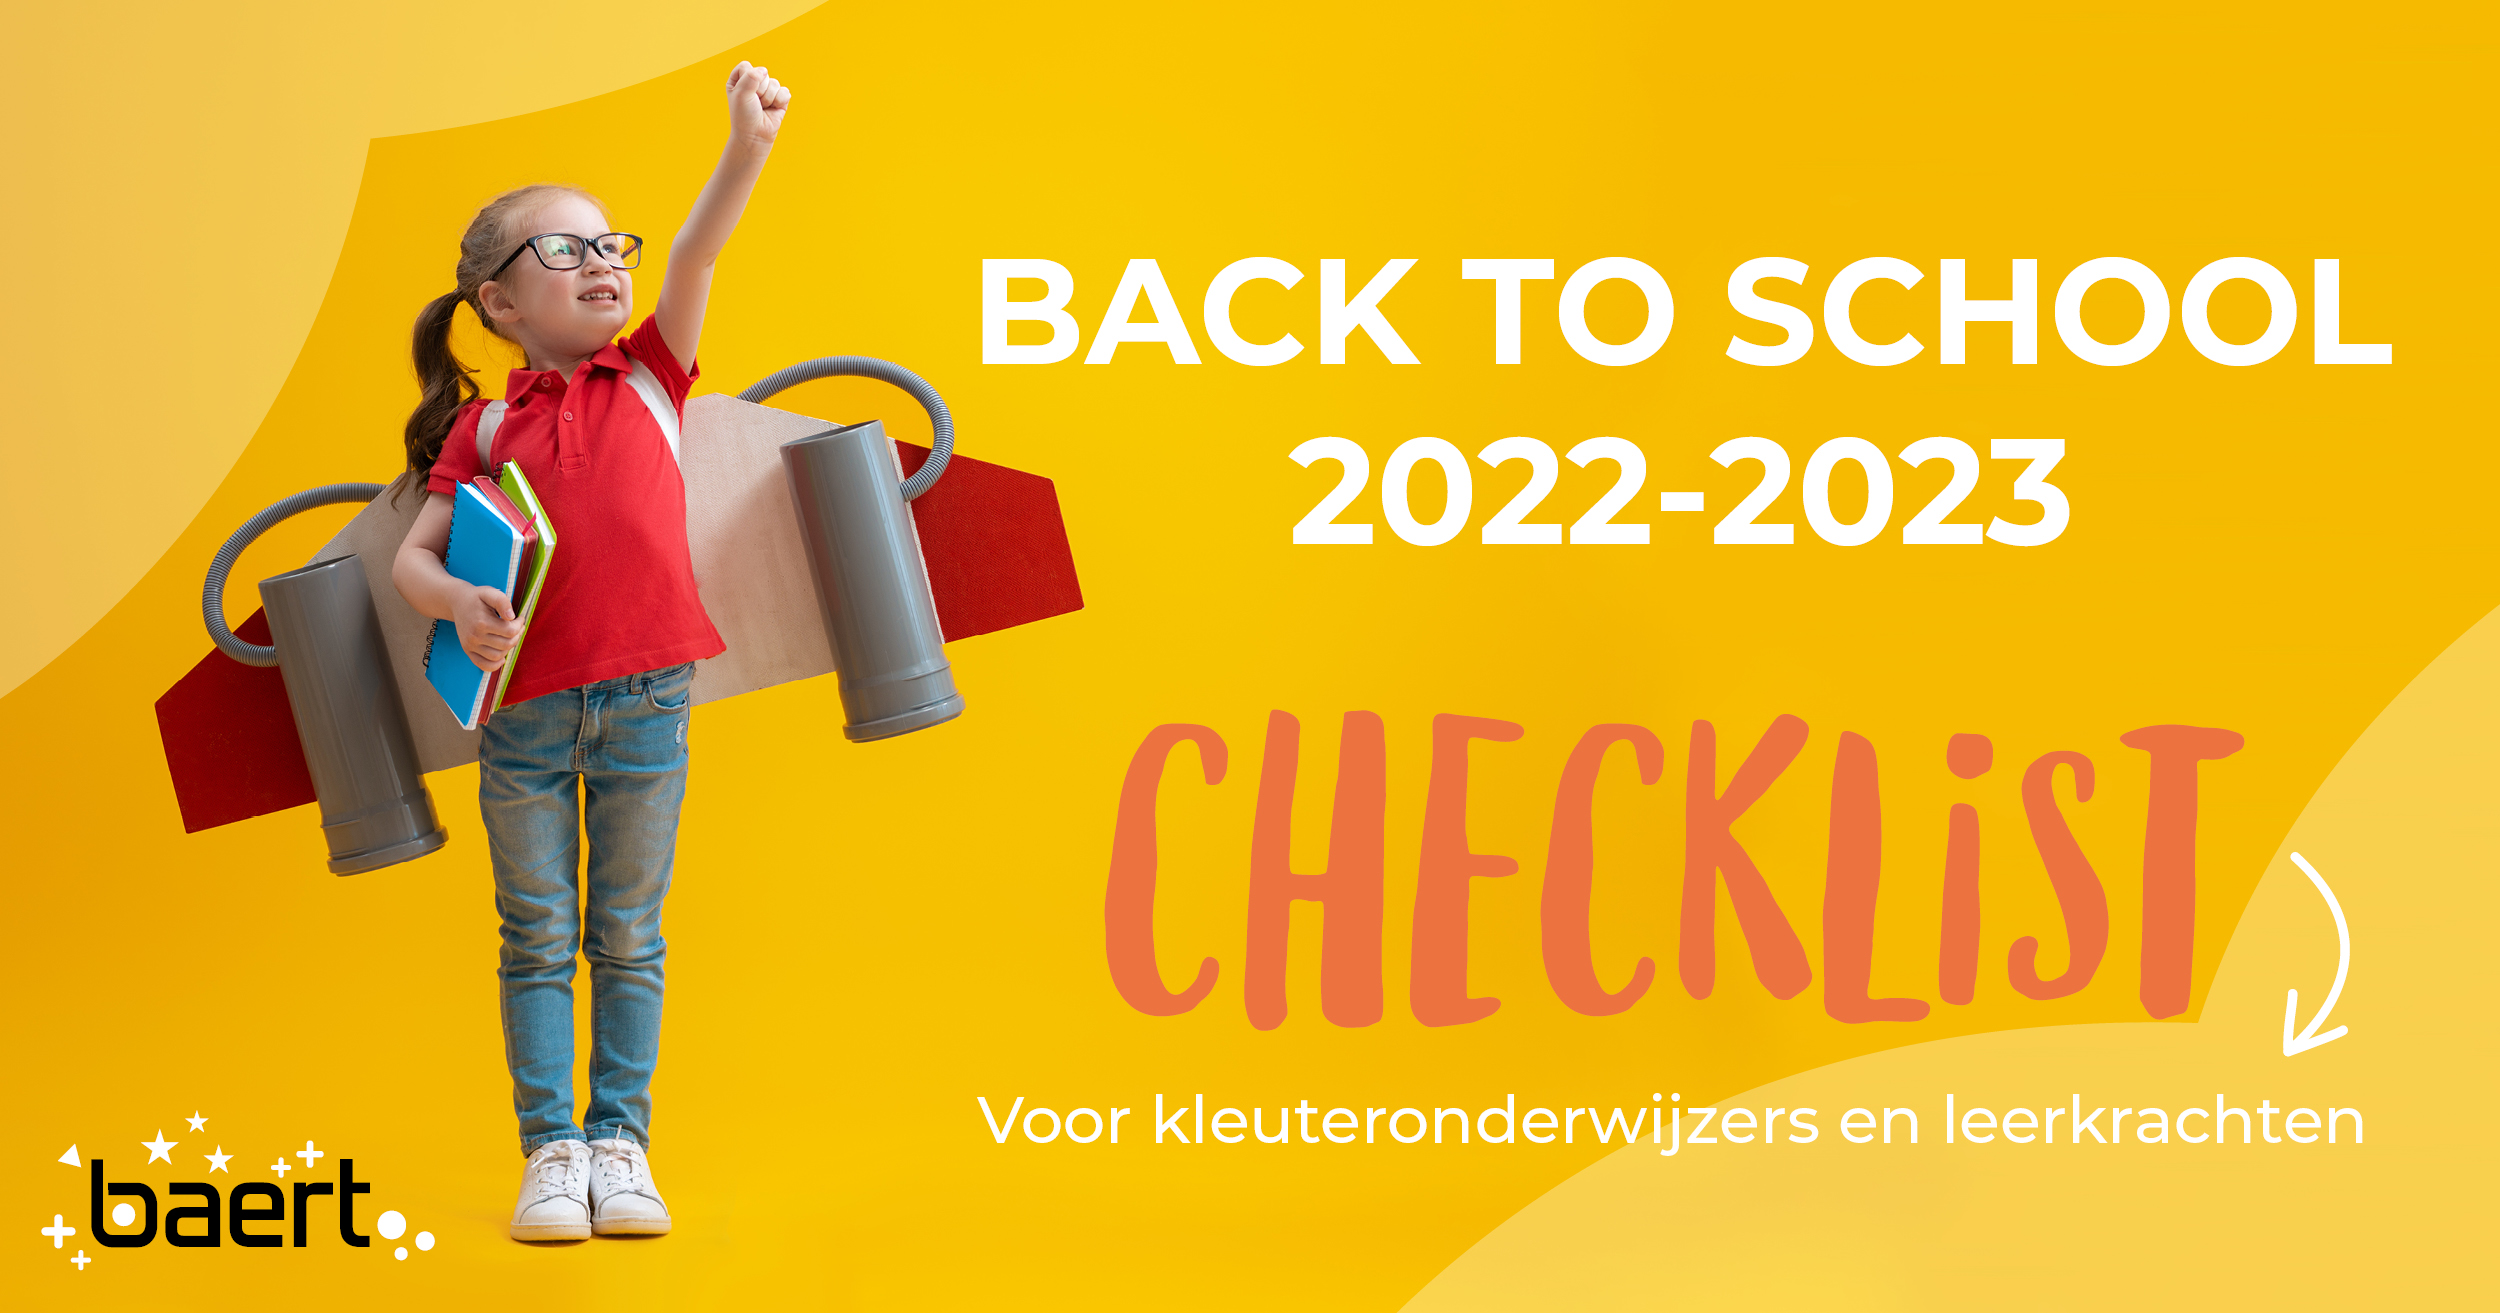 Checklist voor het nieuwe schooljaar 2022-2023